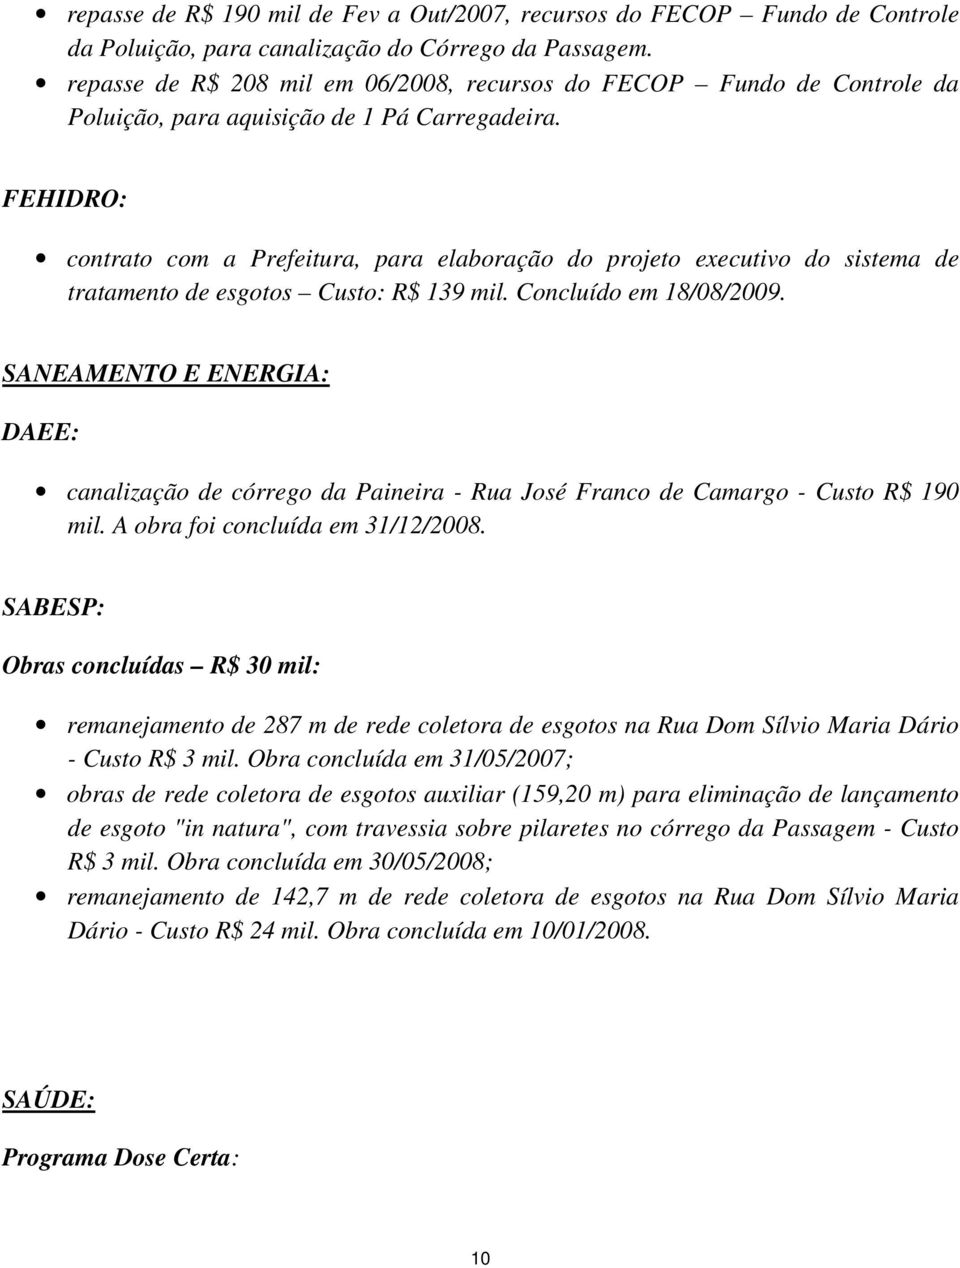 FEHIDRO: contrato com a Prefeitura, para elaboração do projeto executivo do sistema de tratamento de esgotos Custo: R$ 139 mil. Concluído em 18/08/2009.